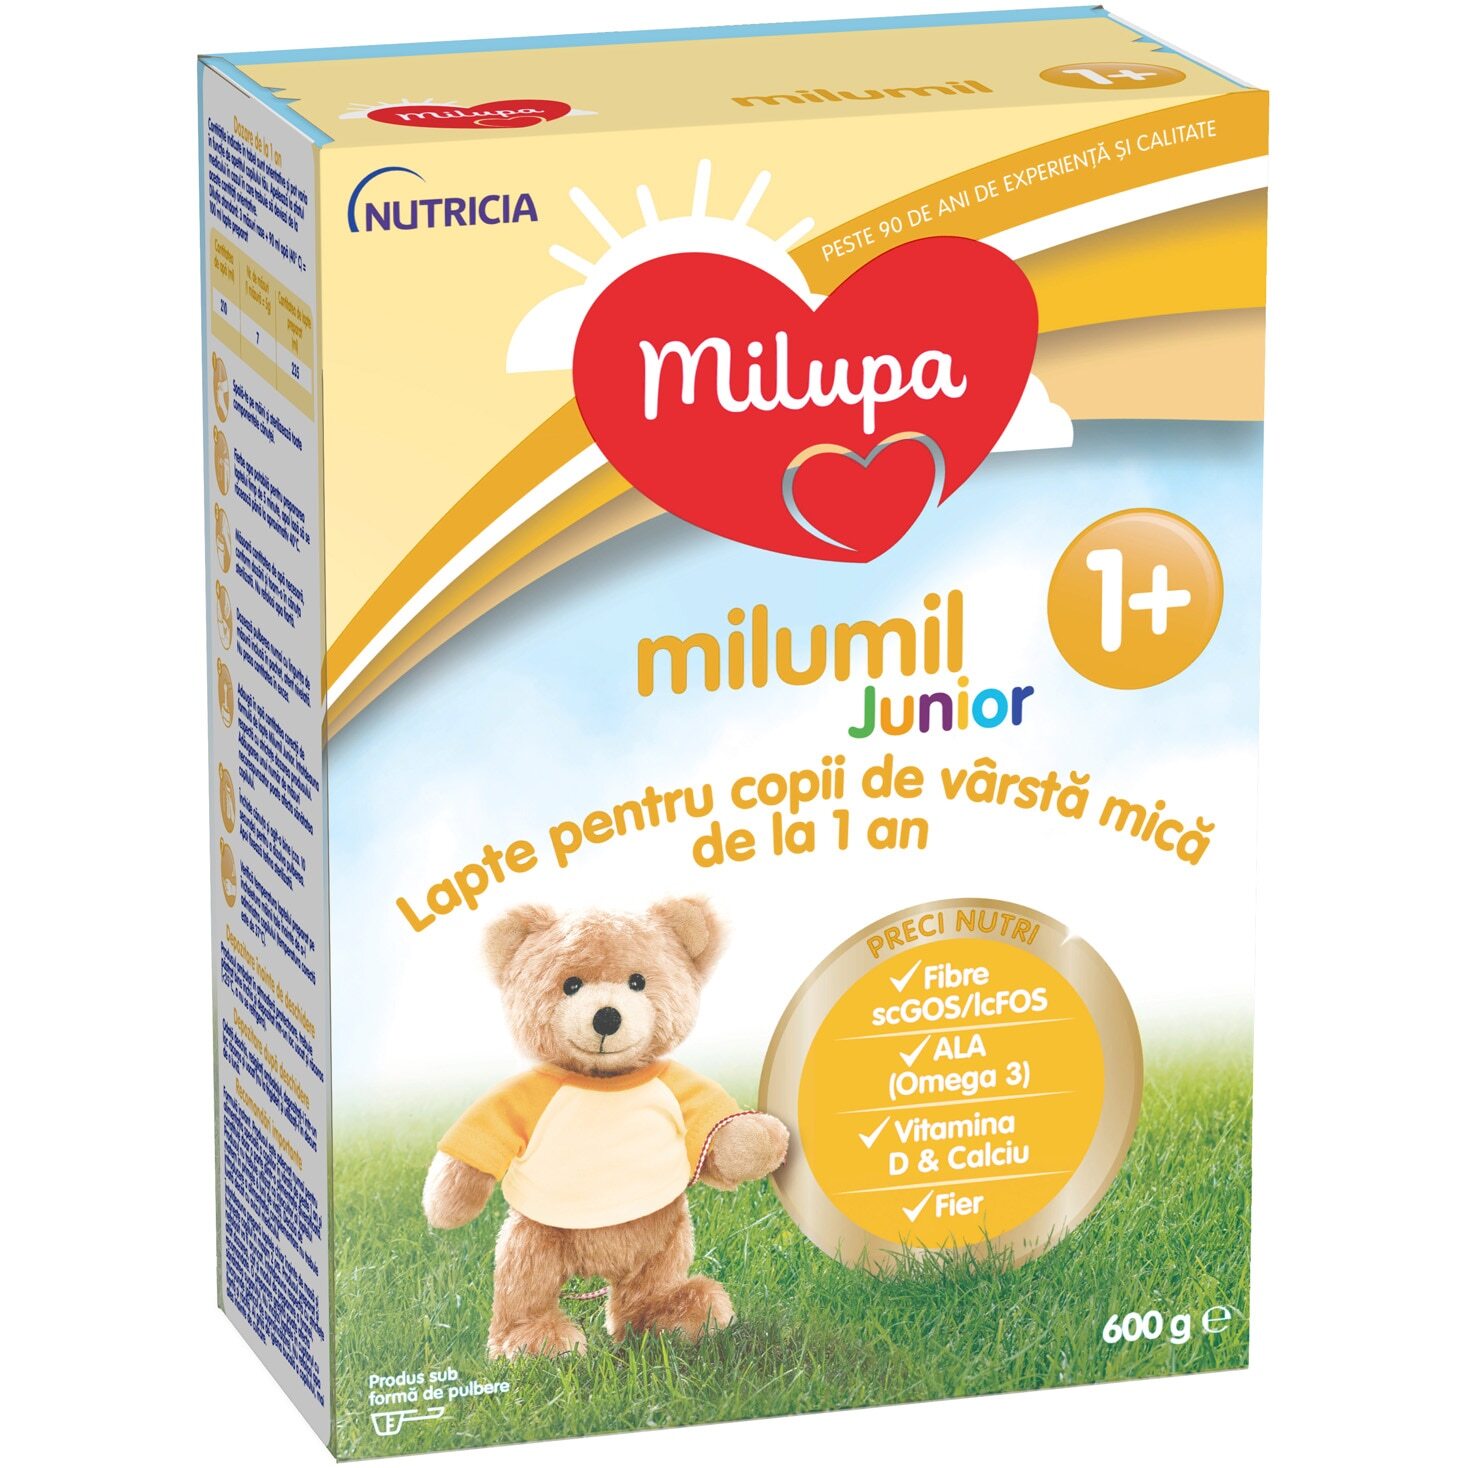 MILUPA MILUMIL JUNIOR 1+ LAPTE PRAF 600G